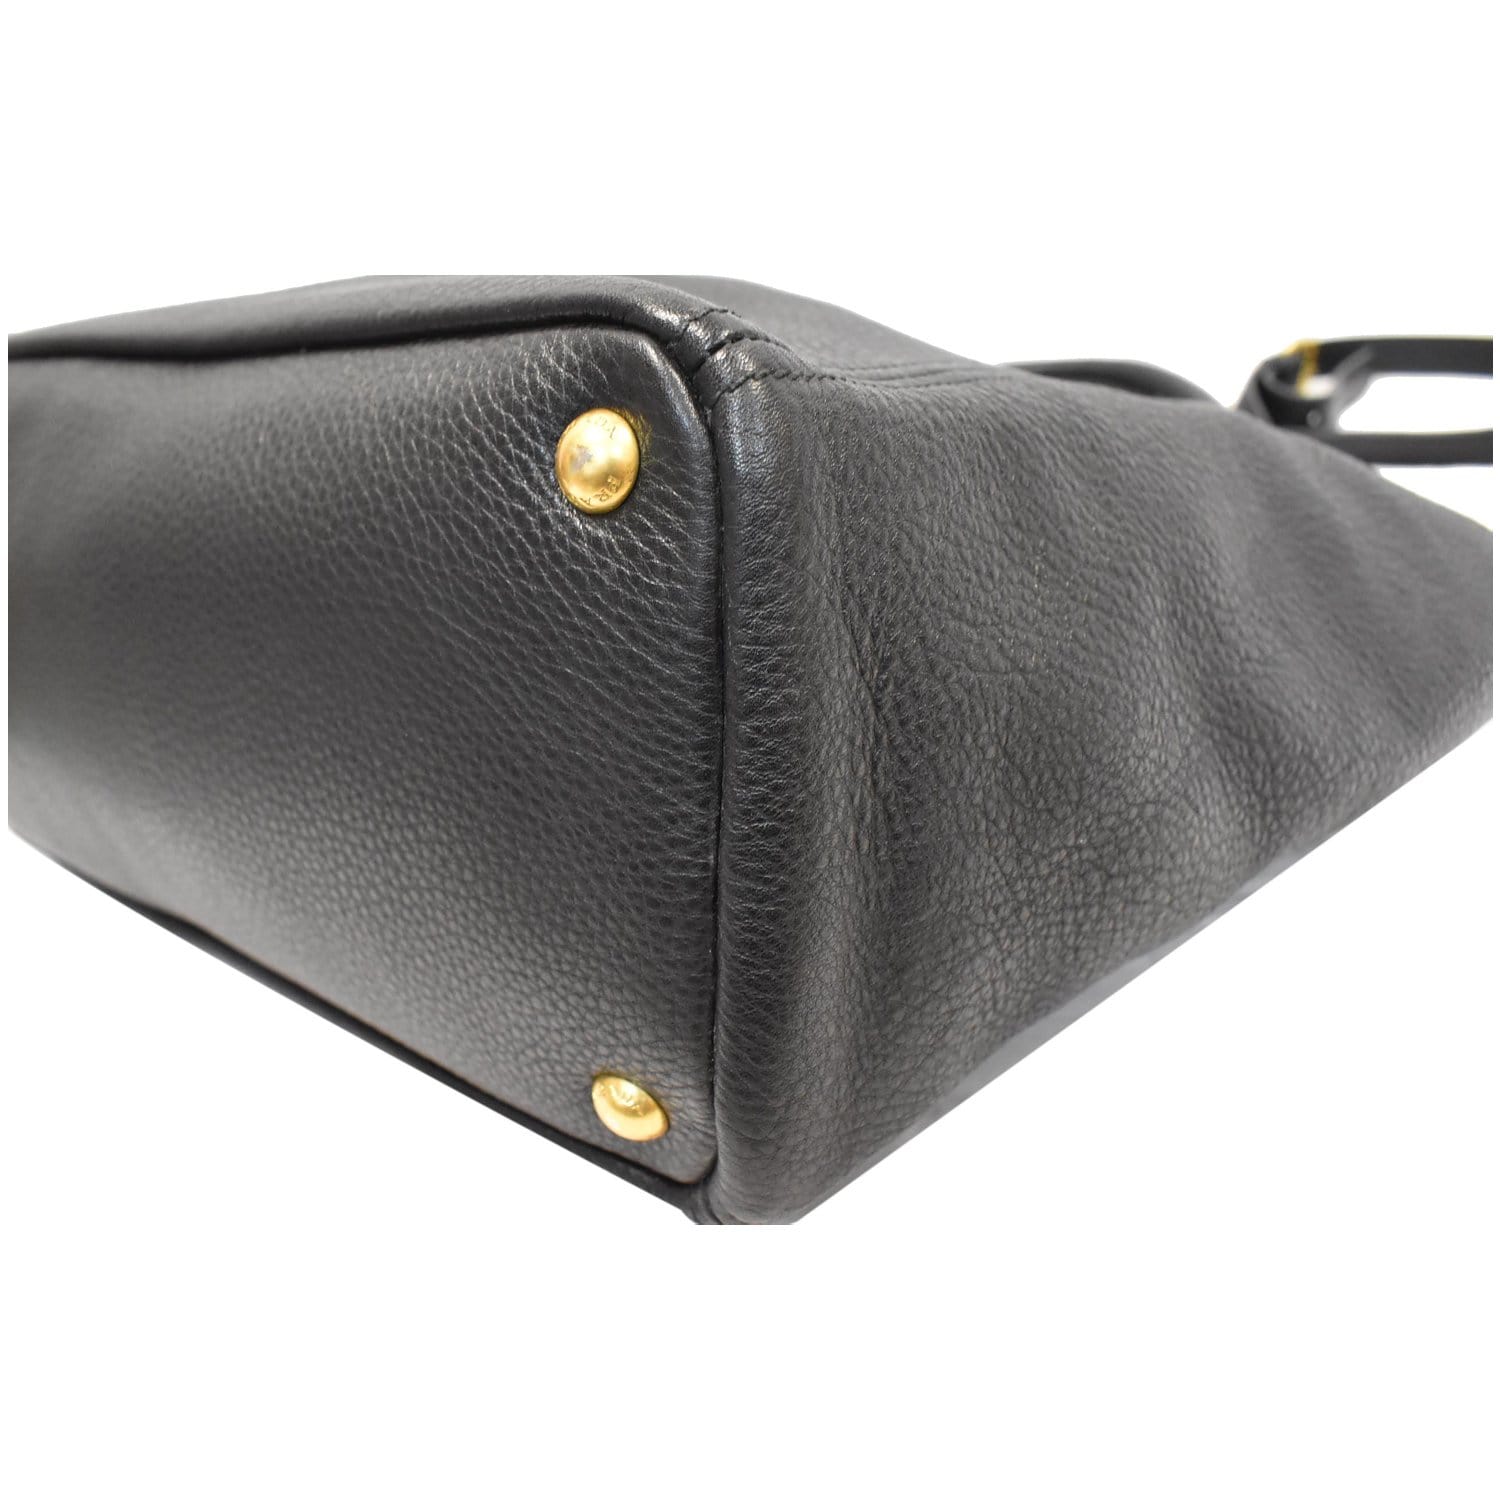 Prada Leather Tote Bag (Totes)